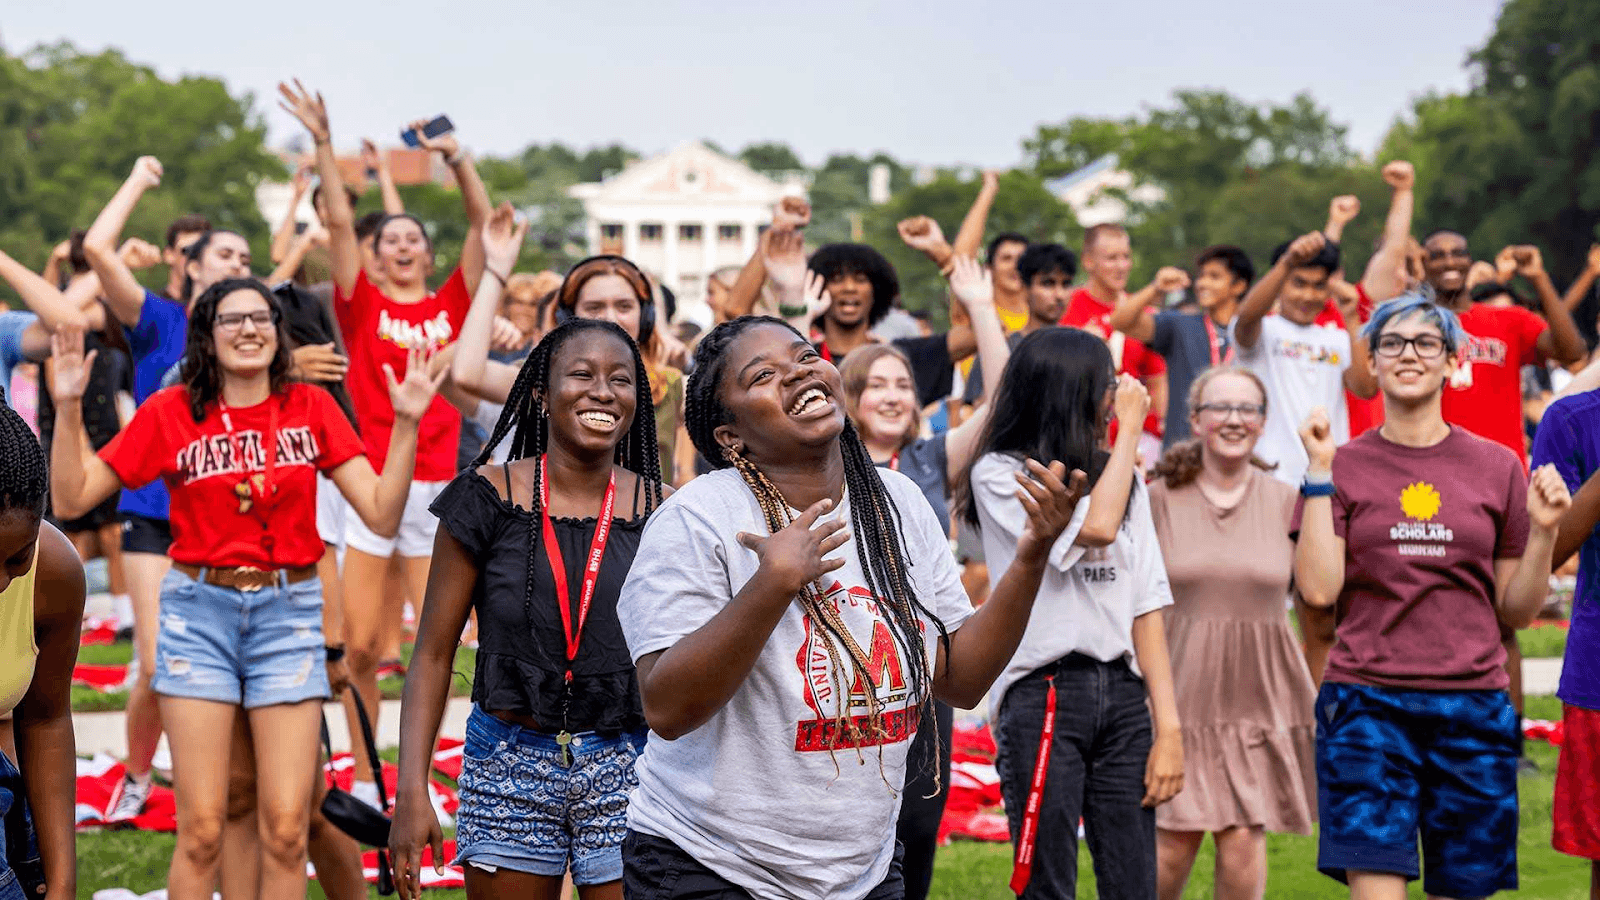 Students dancing at Maryland Day